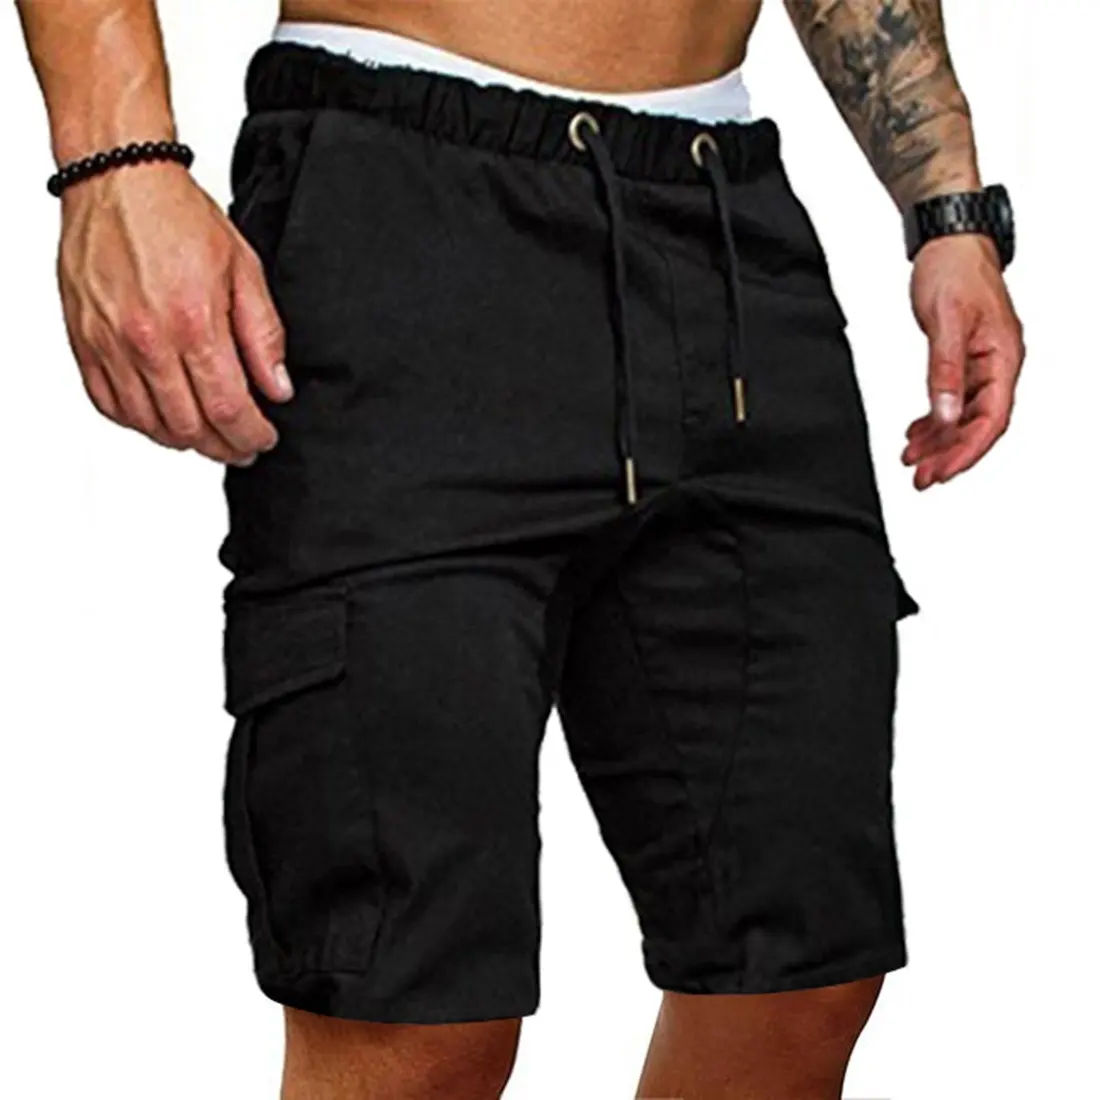 Высококачественные удобные тканевые повседневные уличные шорты, мужские короткие брюки премиум качества